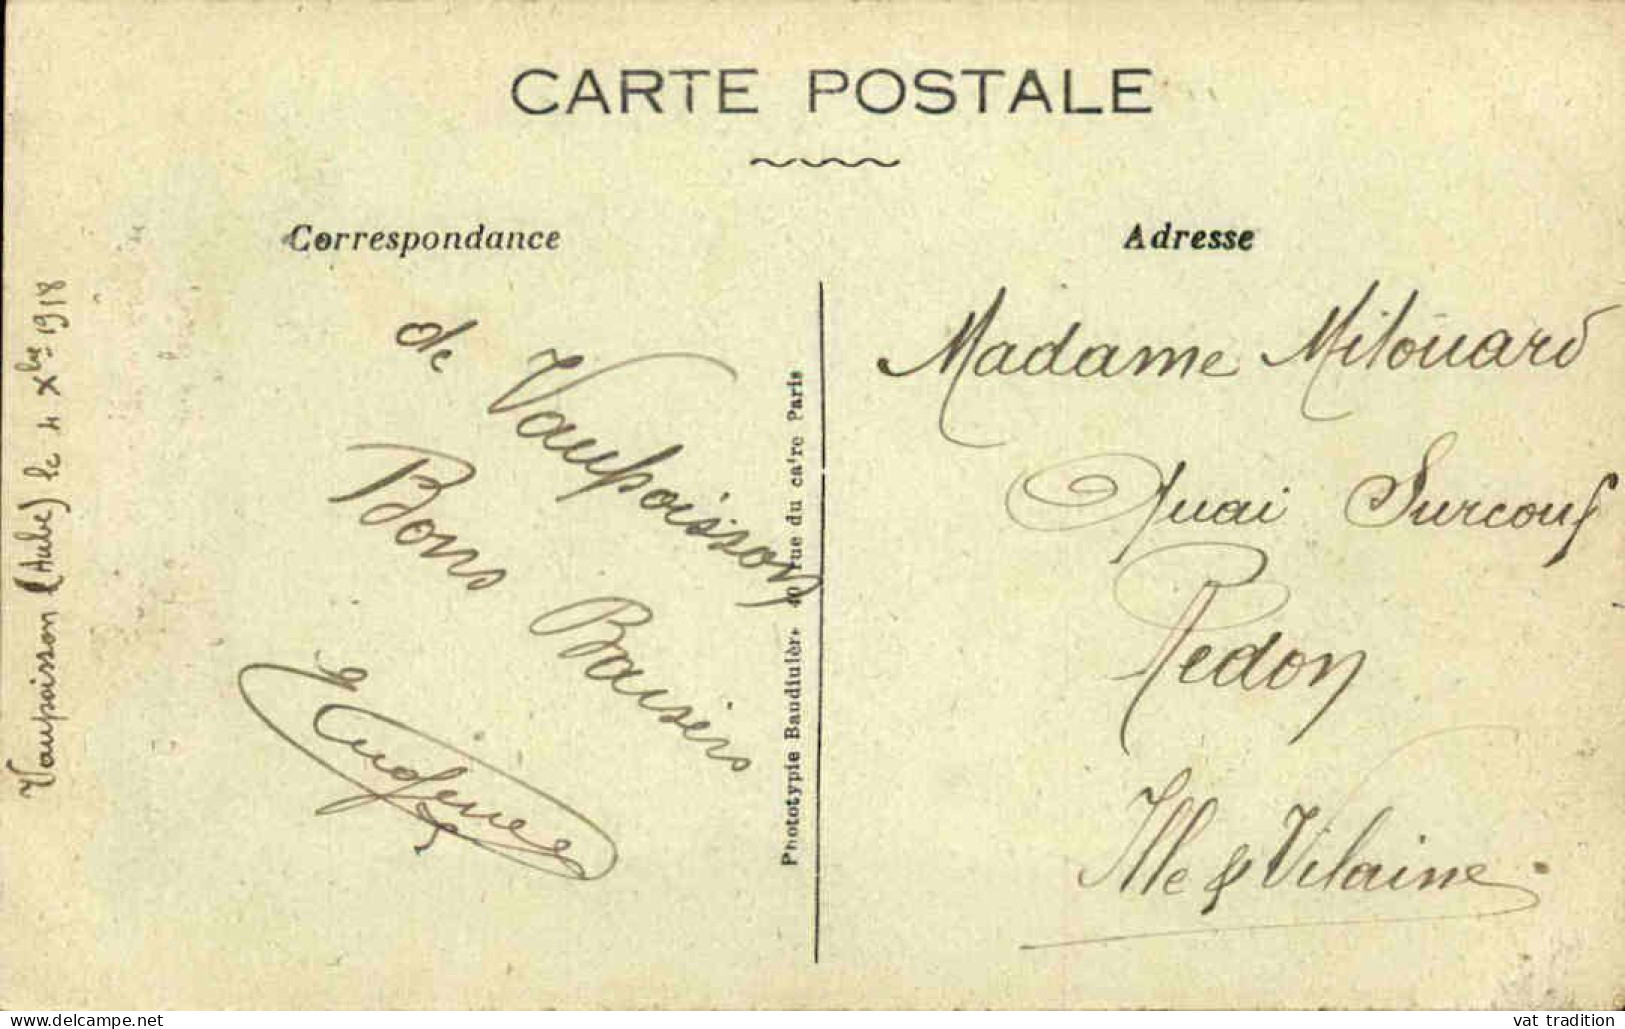 FRANCE - Carte Postale De Arcis Sur Aube -  Place D'Armes - L 152337 - Arcis Sur Aube